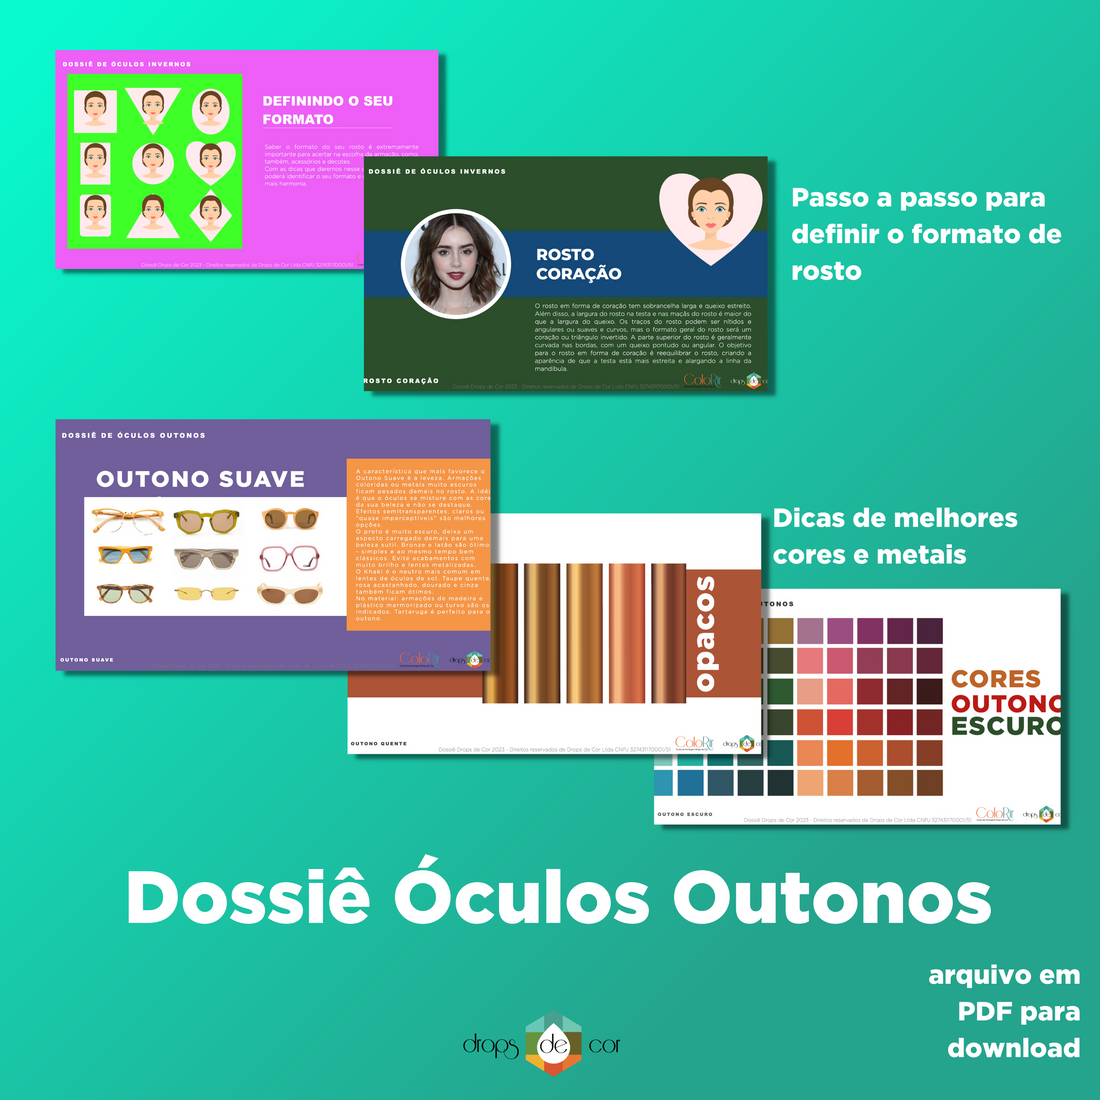 Dossiê Digital Óculos Outonos - Português